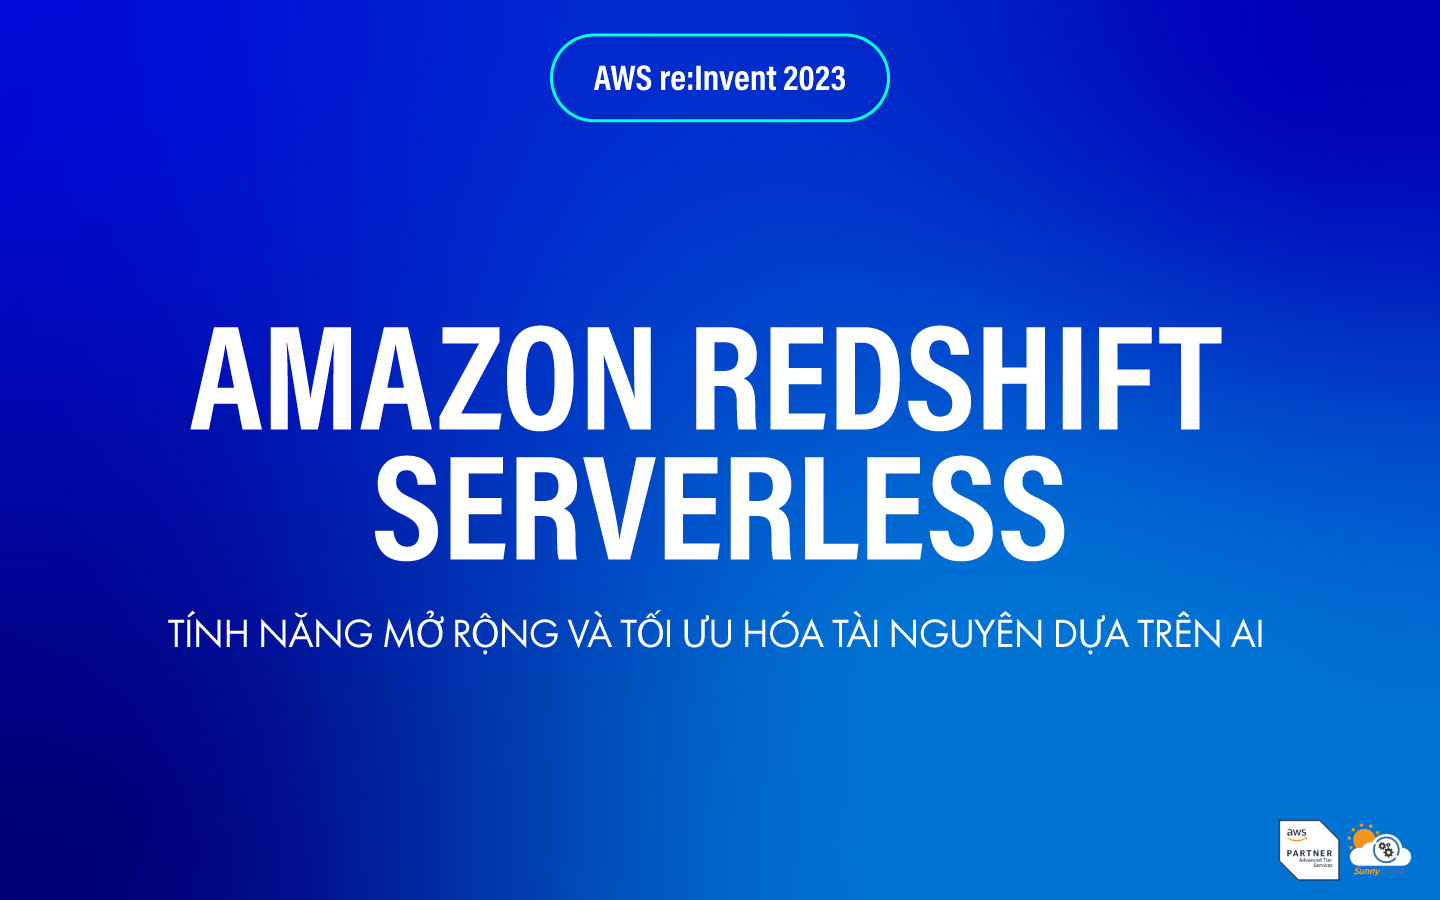 Amazon Redshift Serverless công bố tính năng mở rộng và tối ưu hóa tài nguyên dựa trên AI